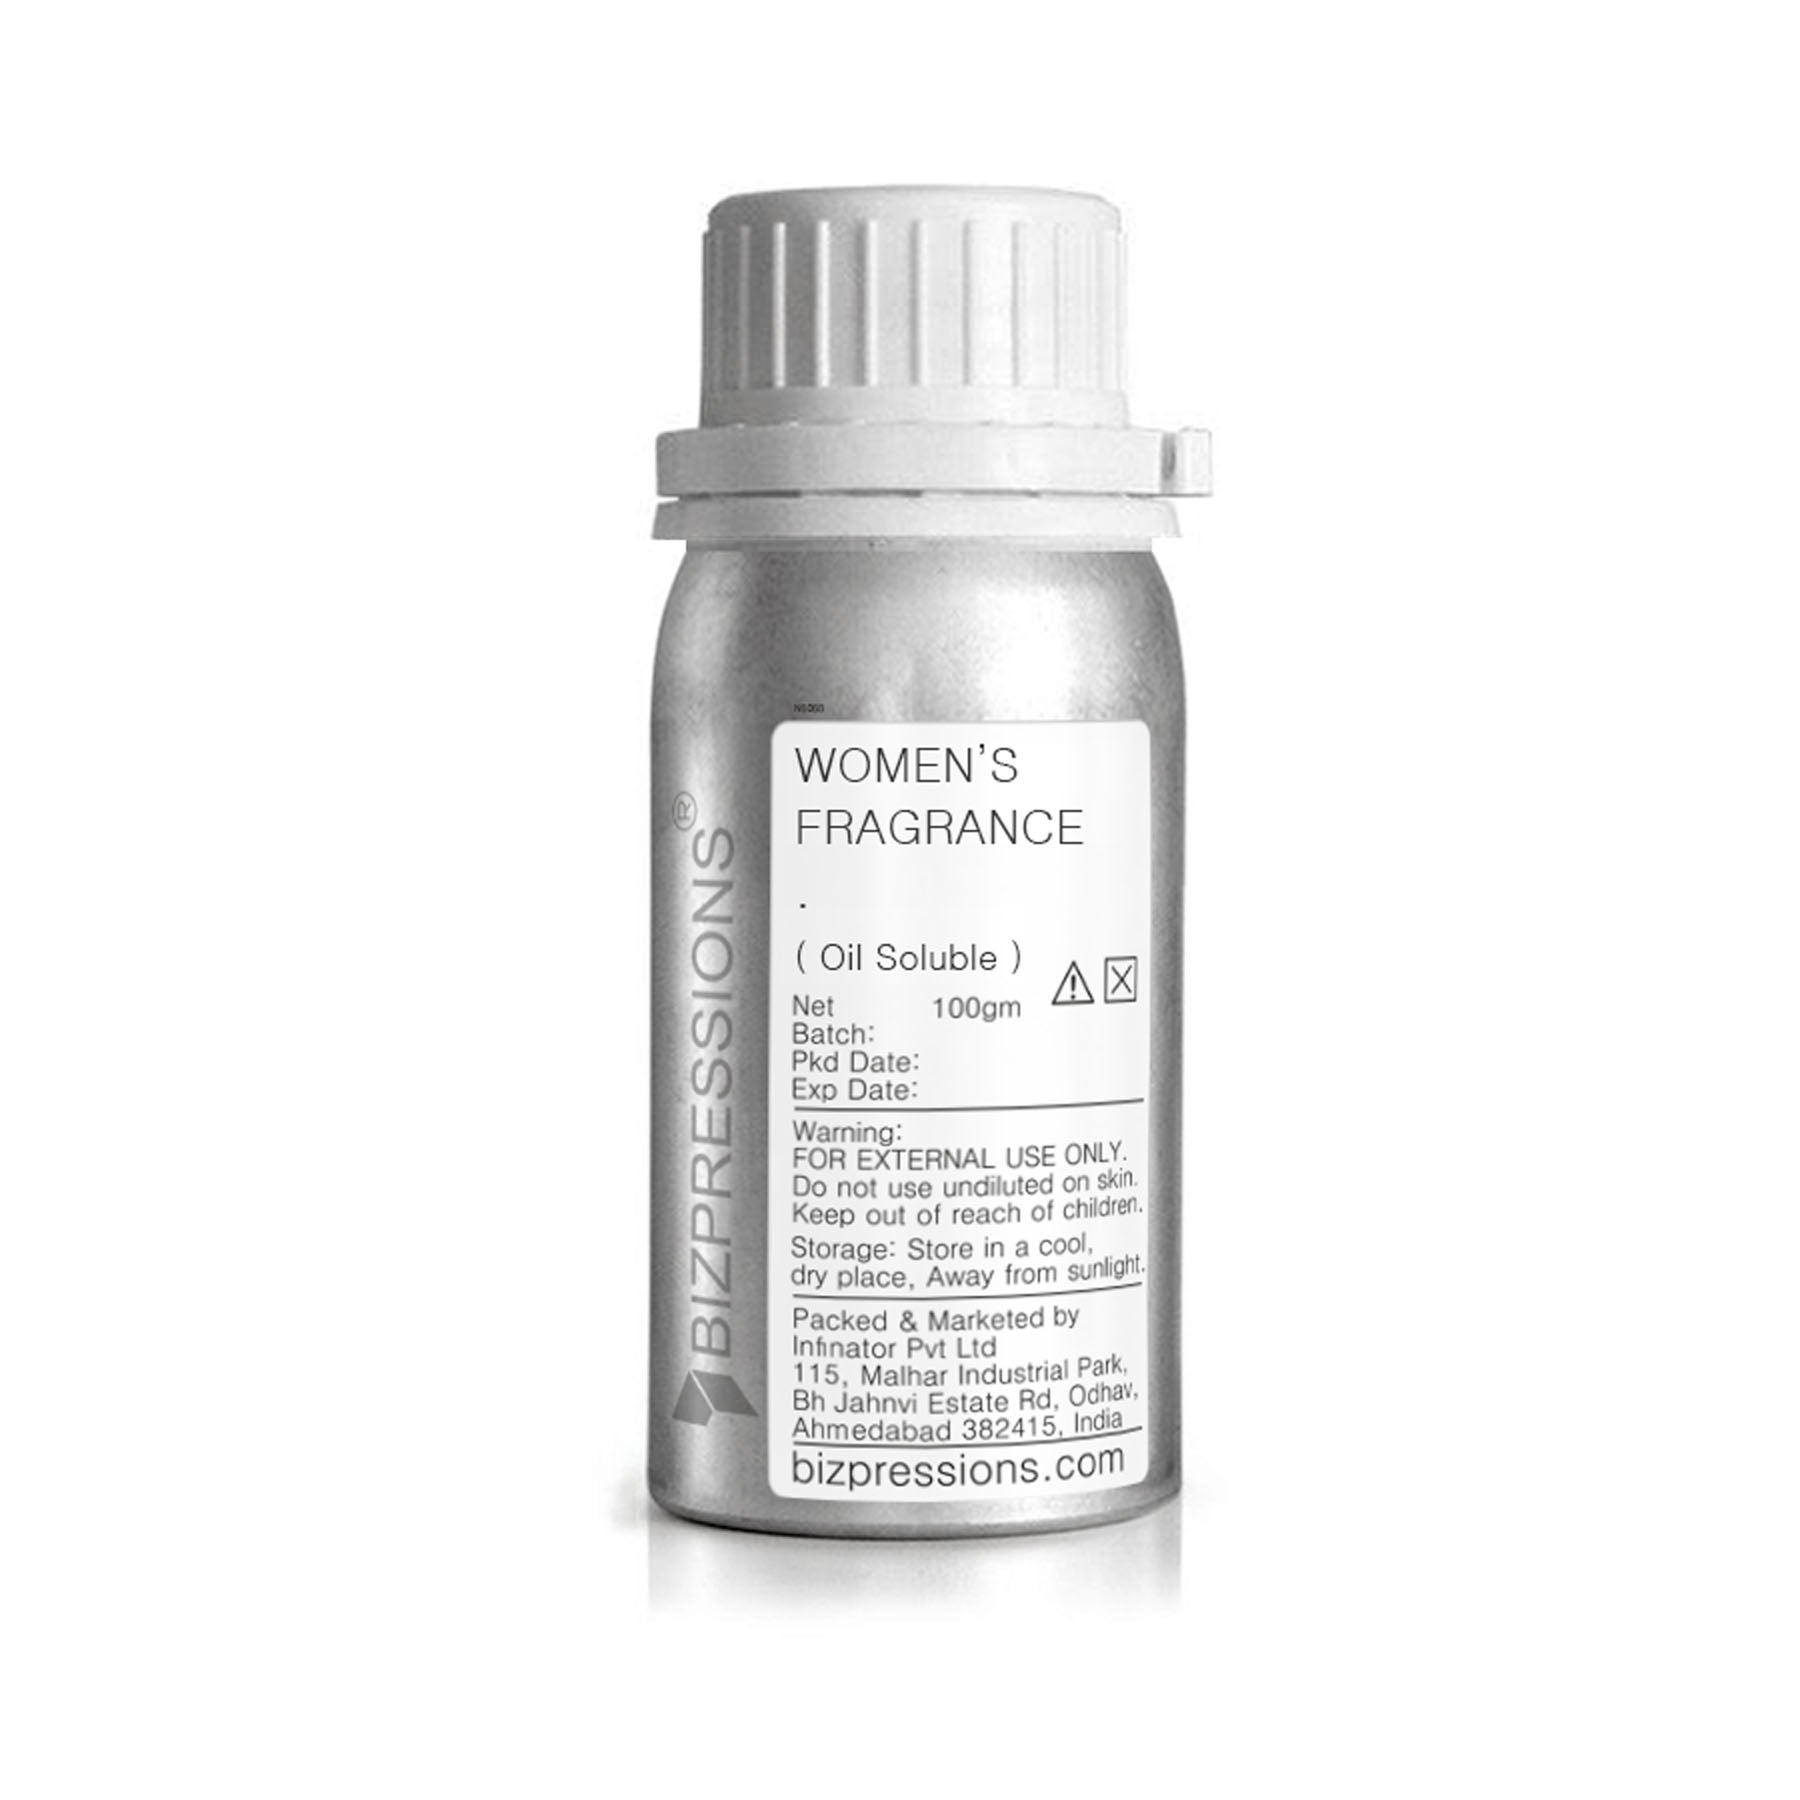 WOMEN'S FRAGRANCE - Fragrance ( Oil Soluble ) - 100 gm